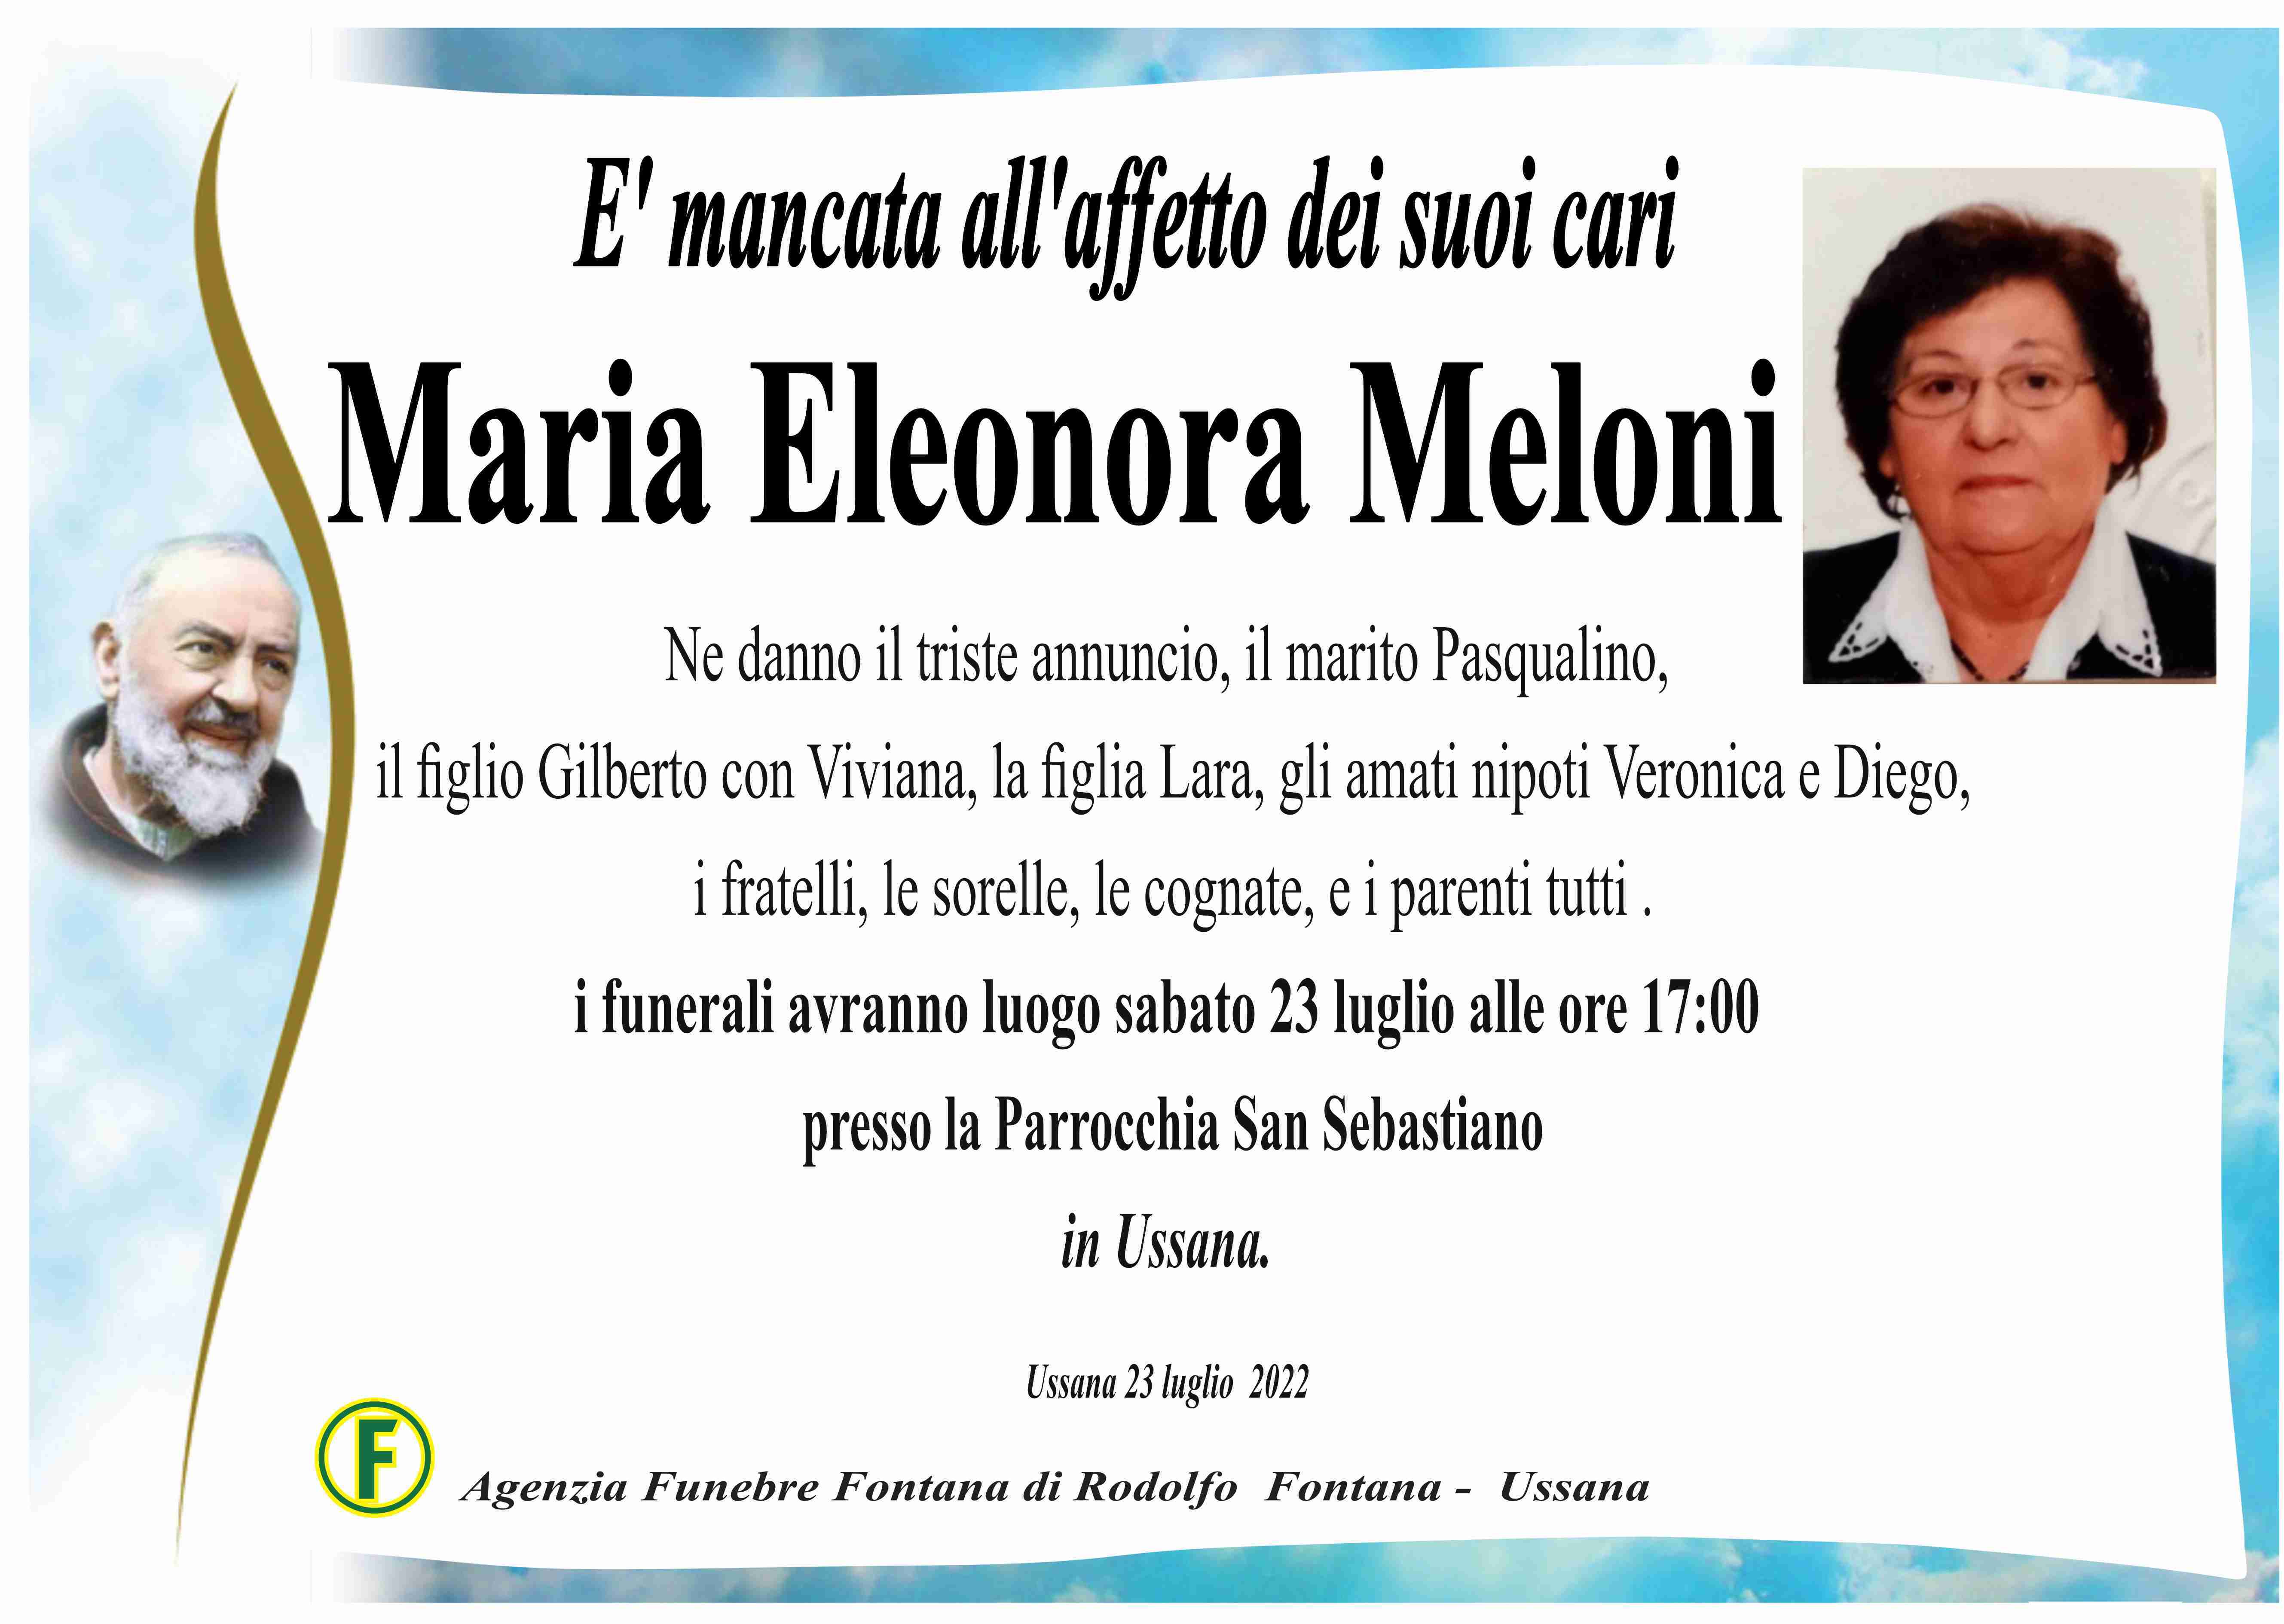 Maria Eleonora Meloni